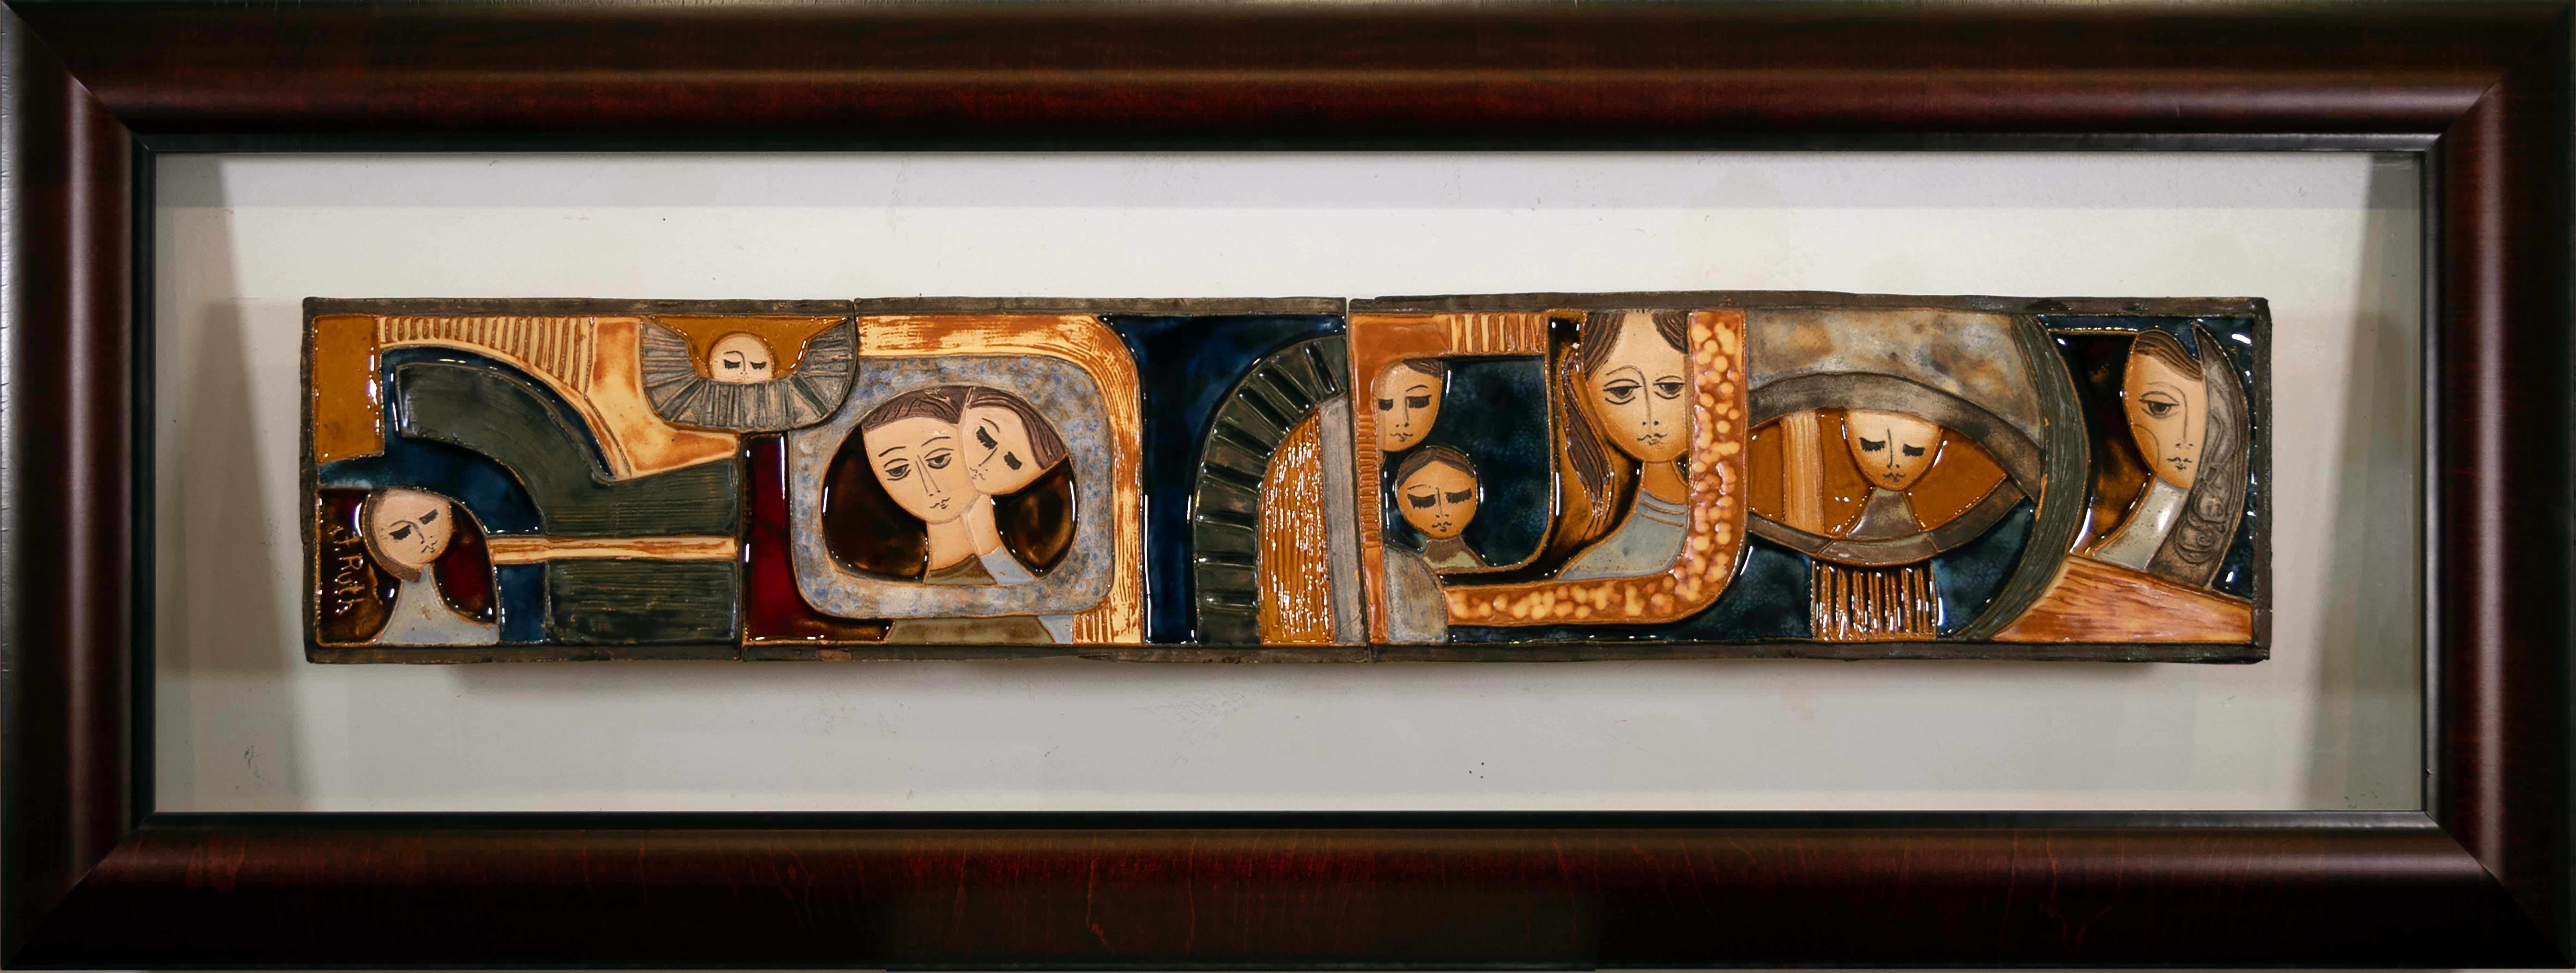 Une installation murale fantaisiste et moderniste de carreaux de céramique figuratifs de l'artiste israélienne Ruth Faktor (Faktorowicz). Une composition unique sur le thème de l'amitié. Le carreau a été peint à la main avec les glaçures uniques de